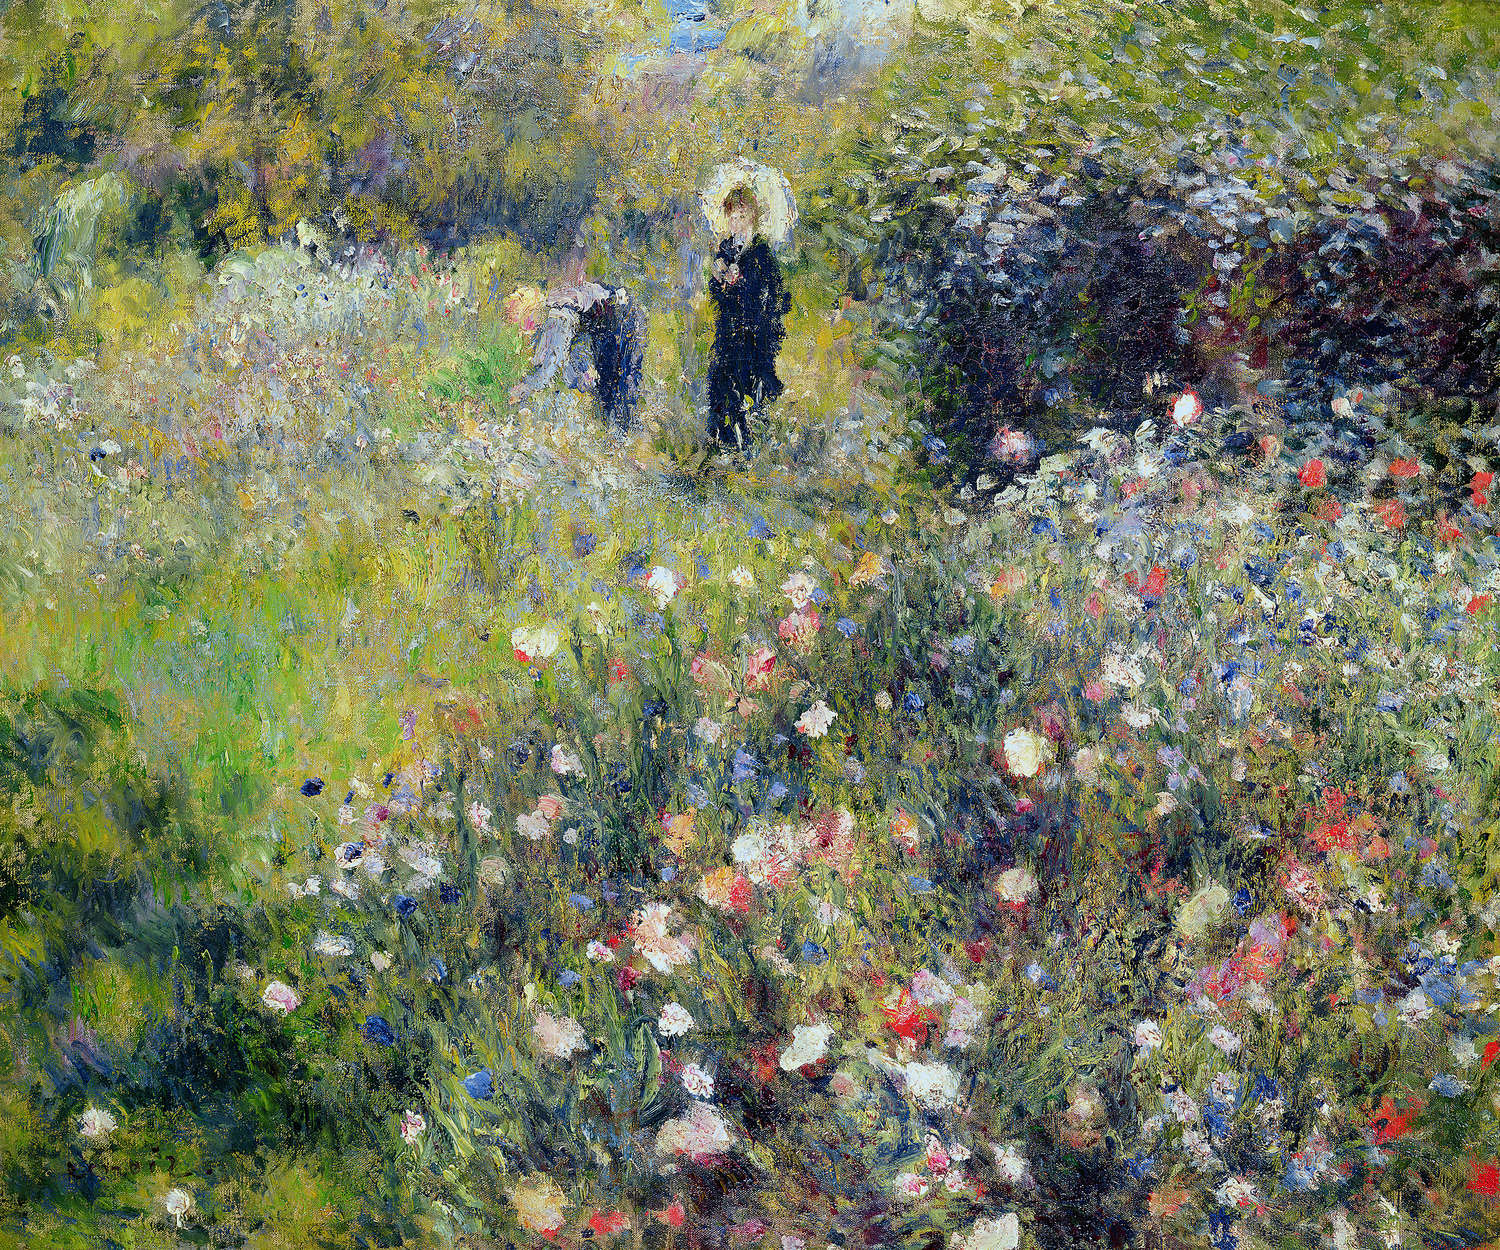             Fotomurali "Donna con ombrellone in giardino" di Pierre Auguste Renoir
        